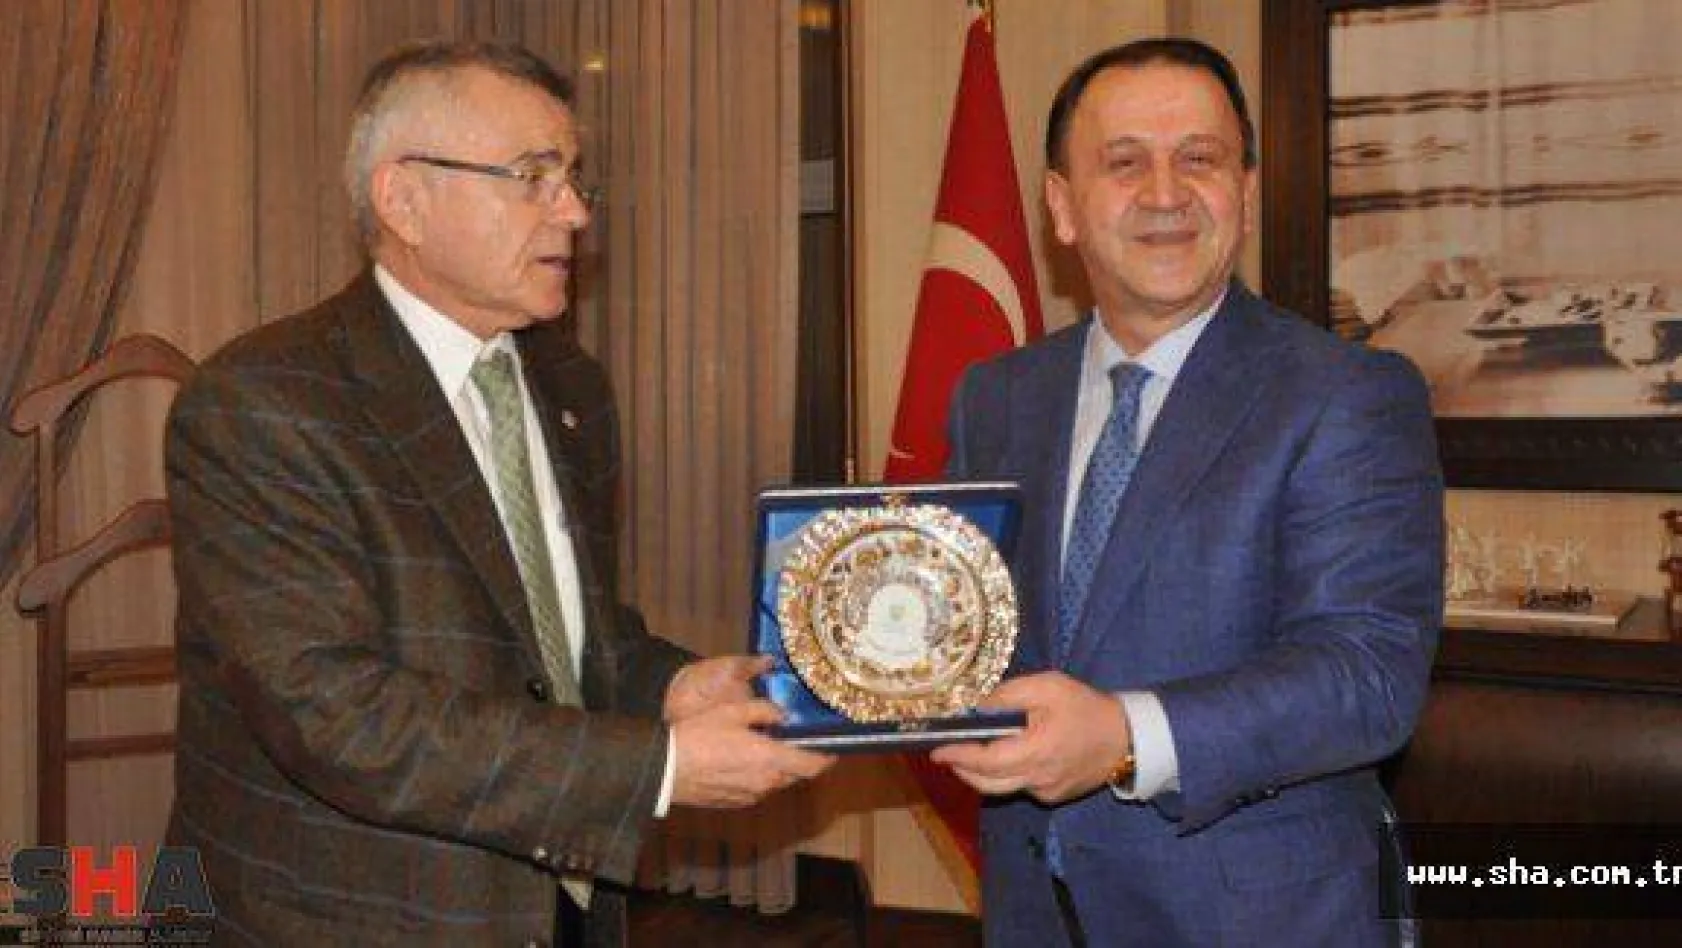 Fenerbahçe Üniversitesi için resmi adımlar atıldı